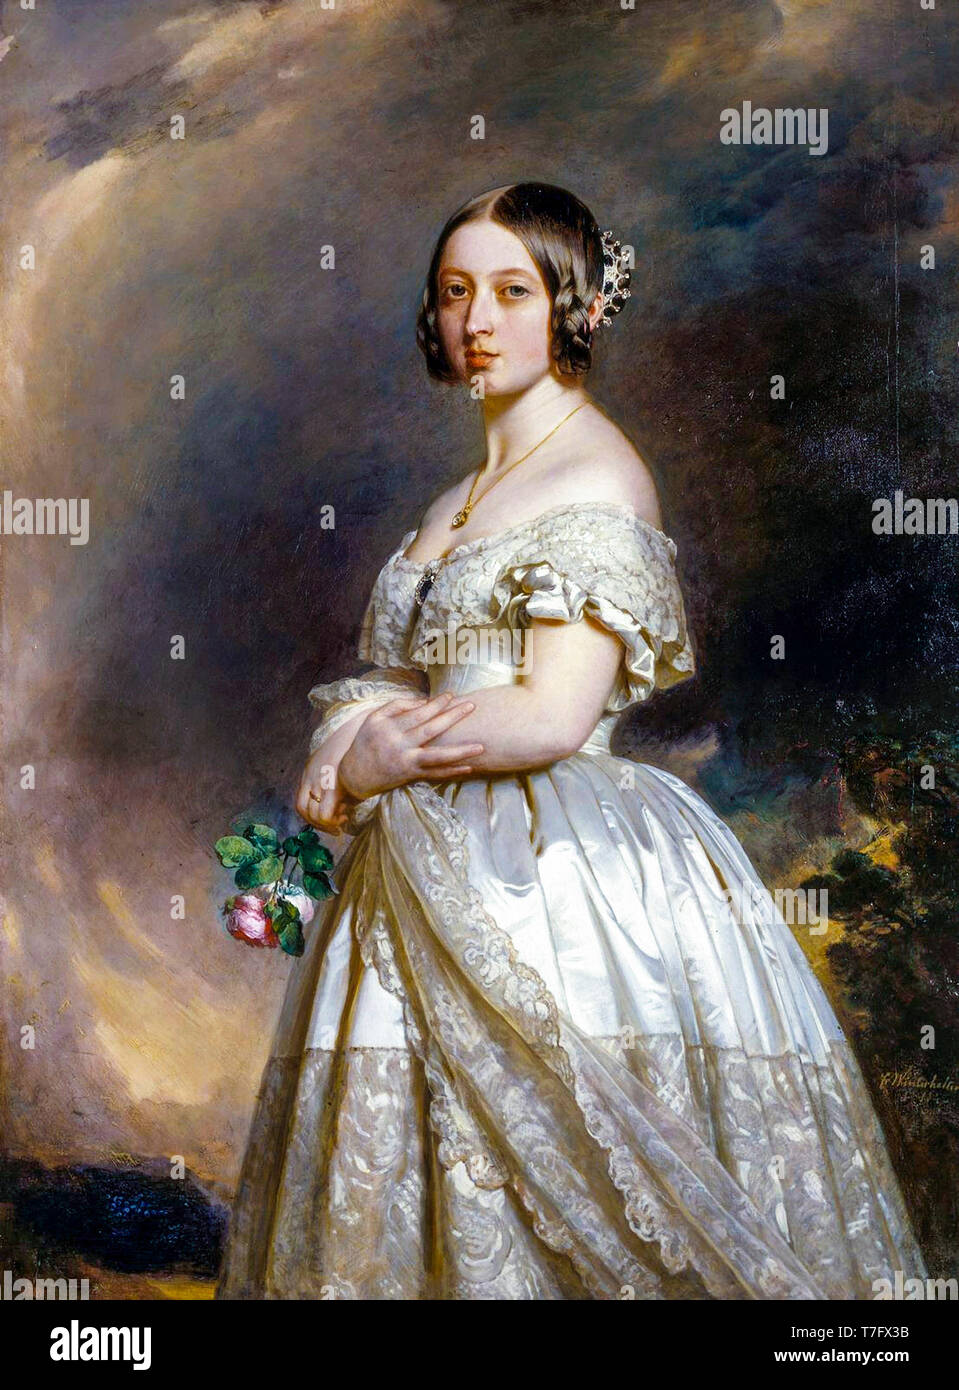 Queen Victoria als junge Frau, portrait Gemälde von Franz Xaver Winterhalter, 1842 Stockfoto